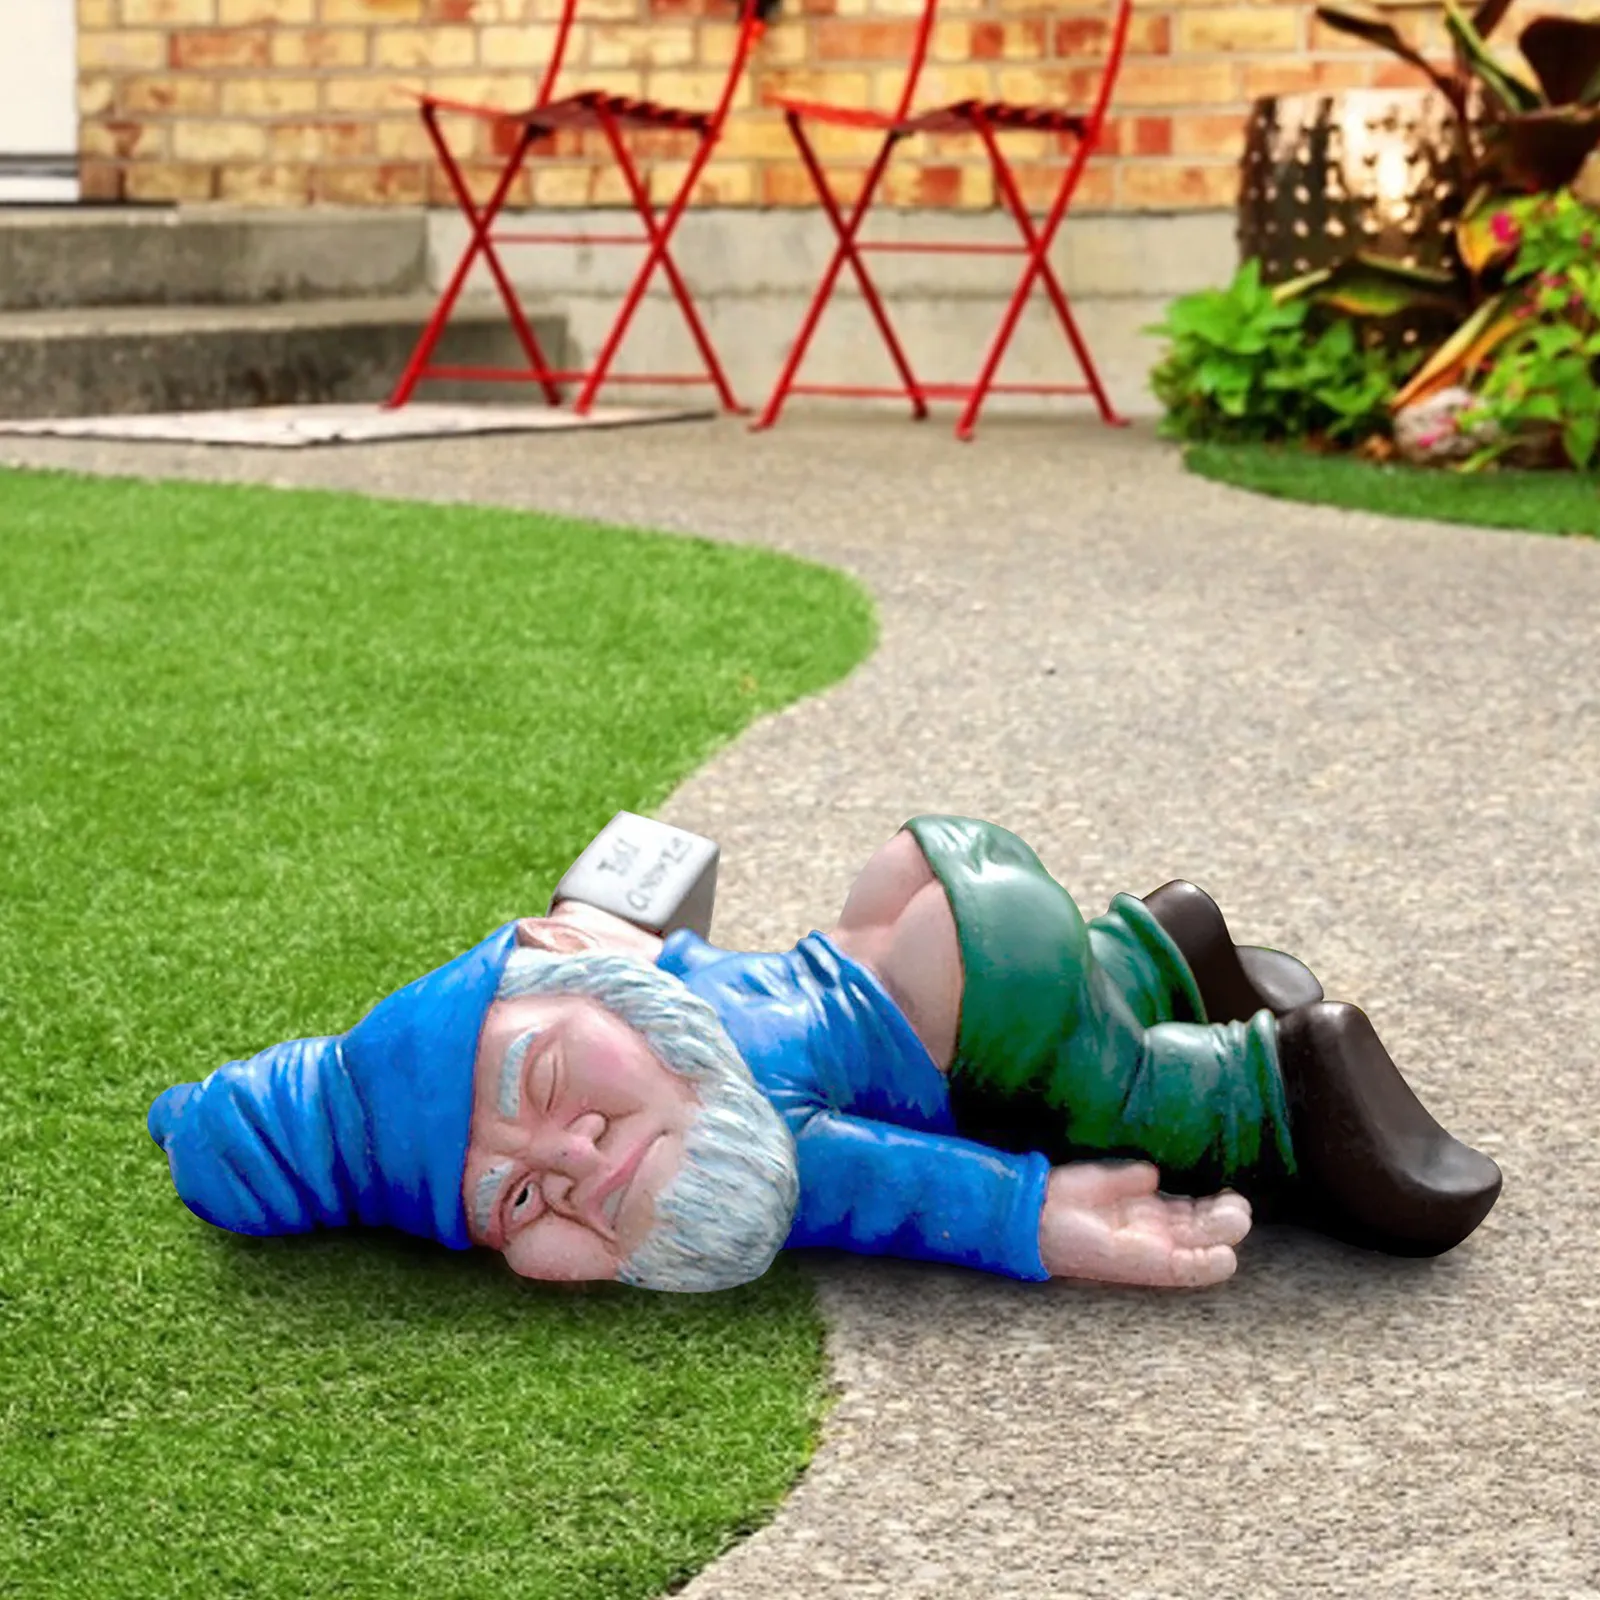 Creative Drunk Dwarf Decor Dwarf Garden Statue Resin Crafts Landscape Ornaments 